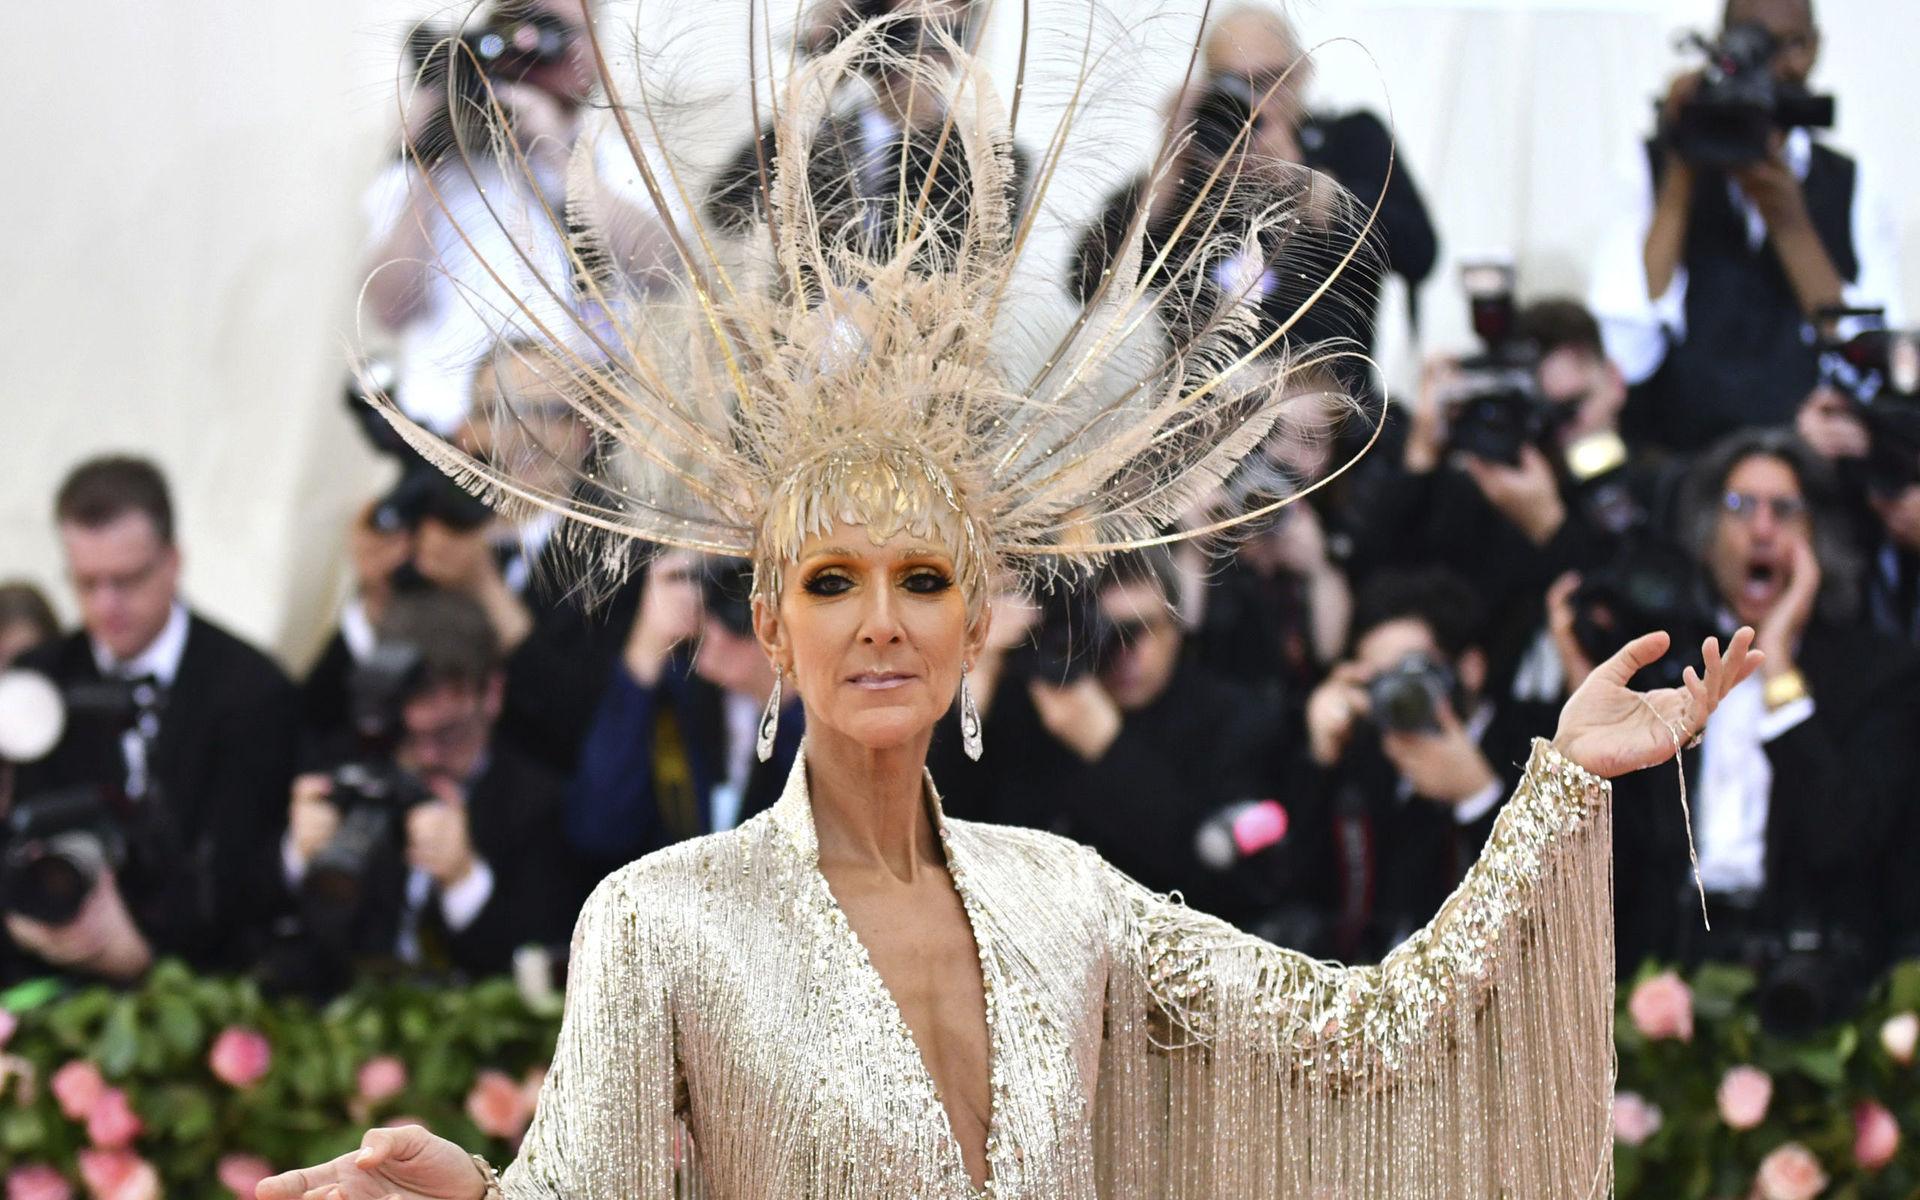 Inte ett hårstrå låg fel på Celine Dion. Eller om det var tvärtom.